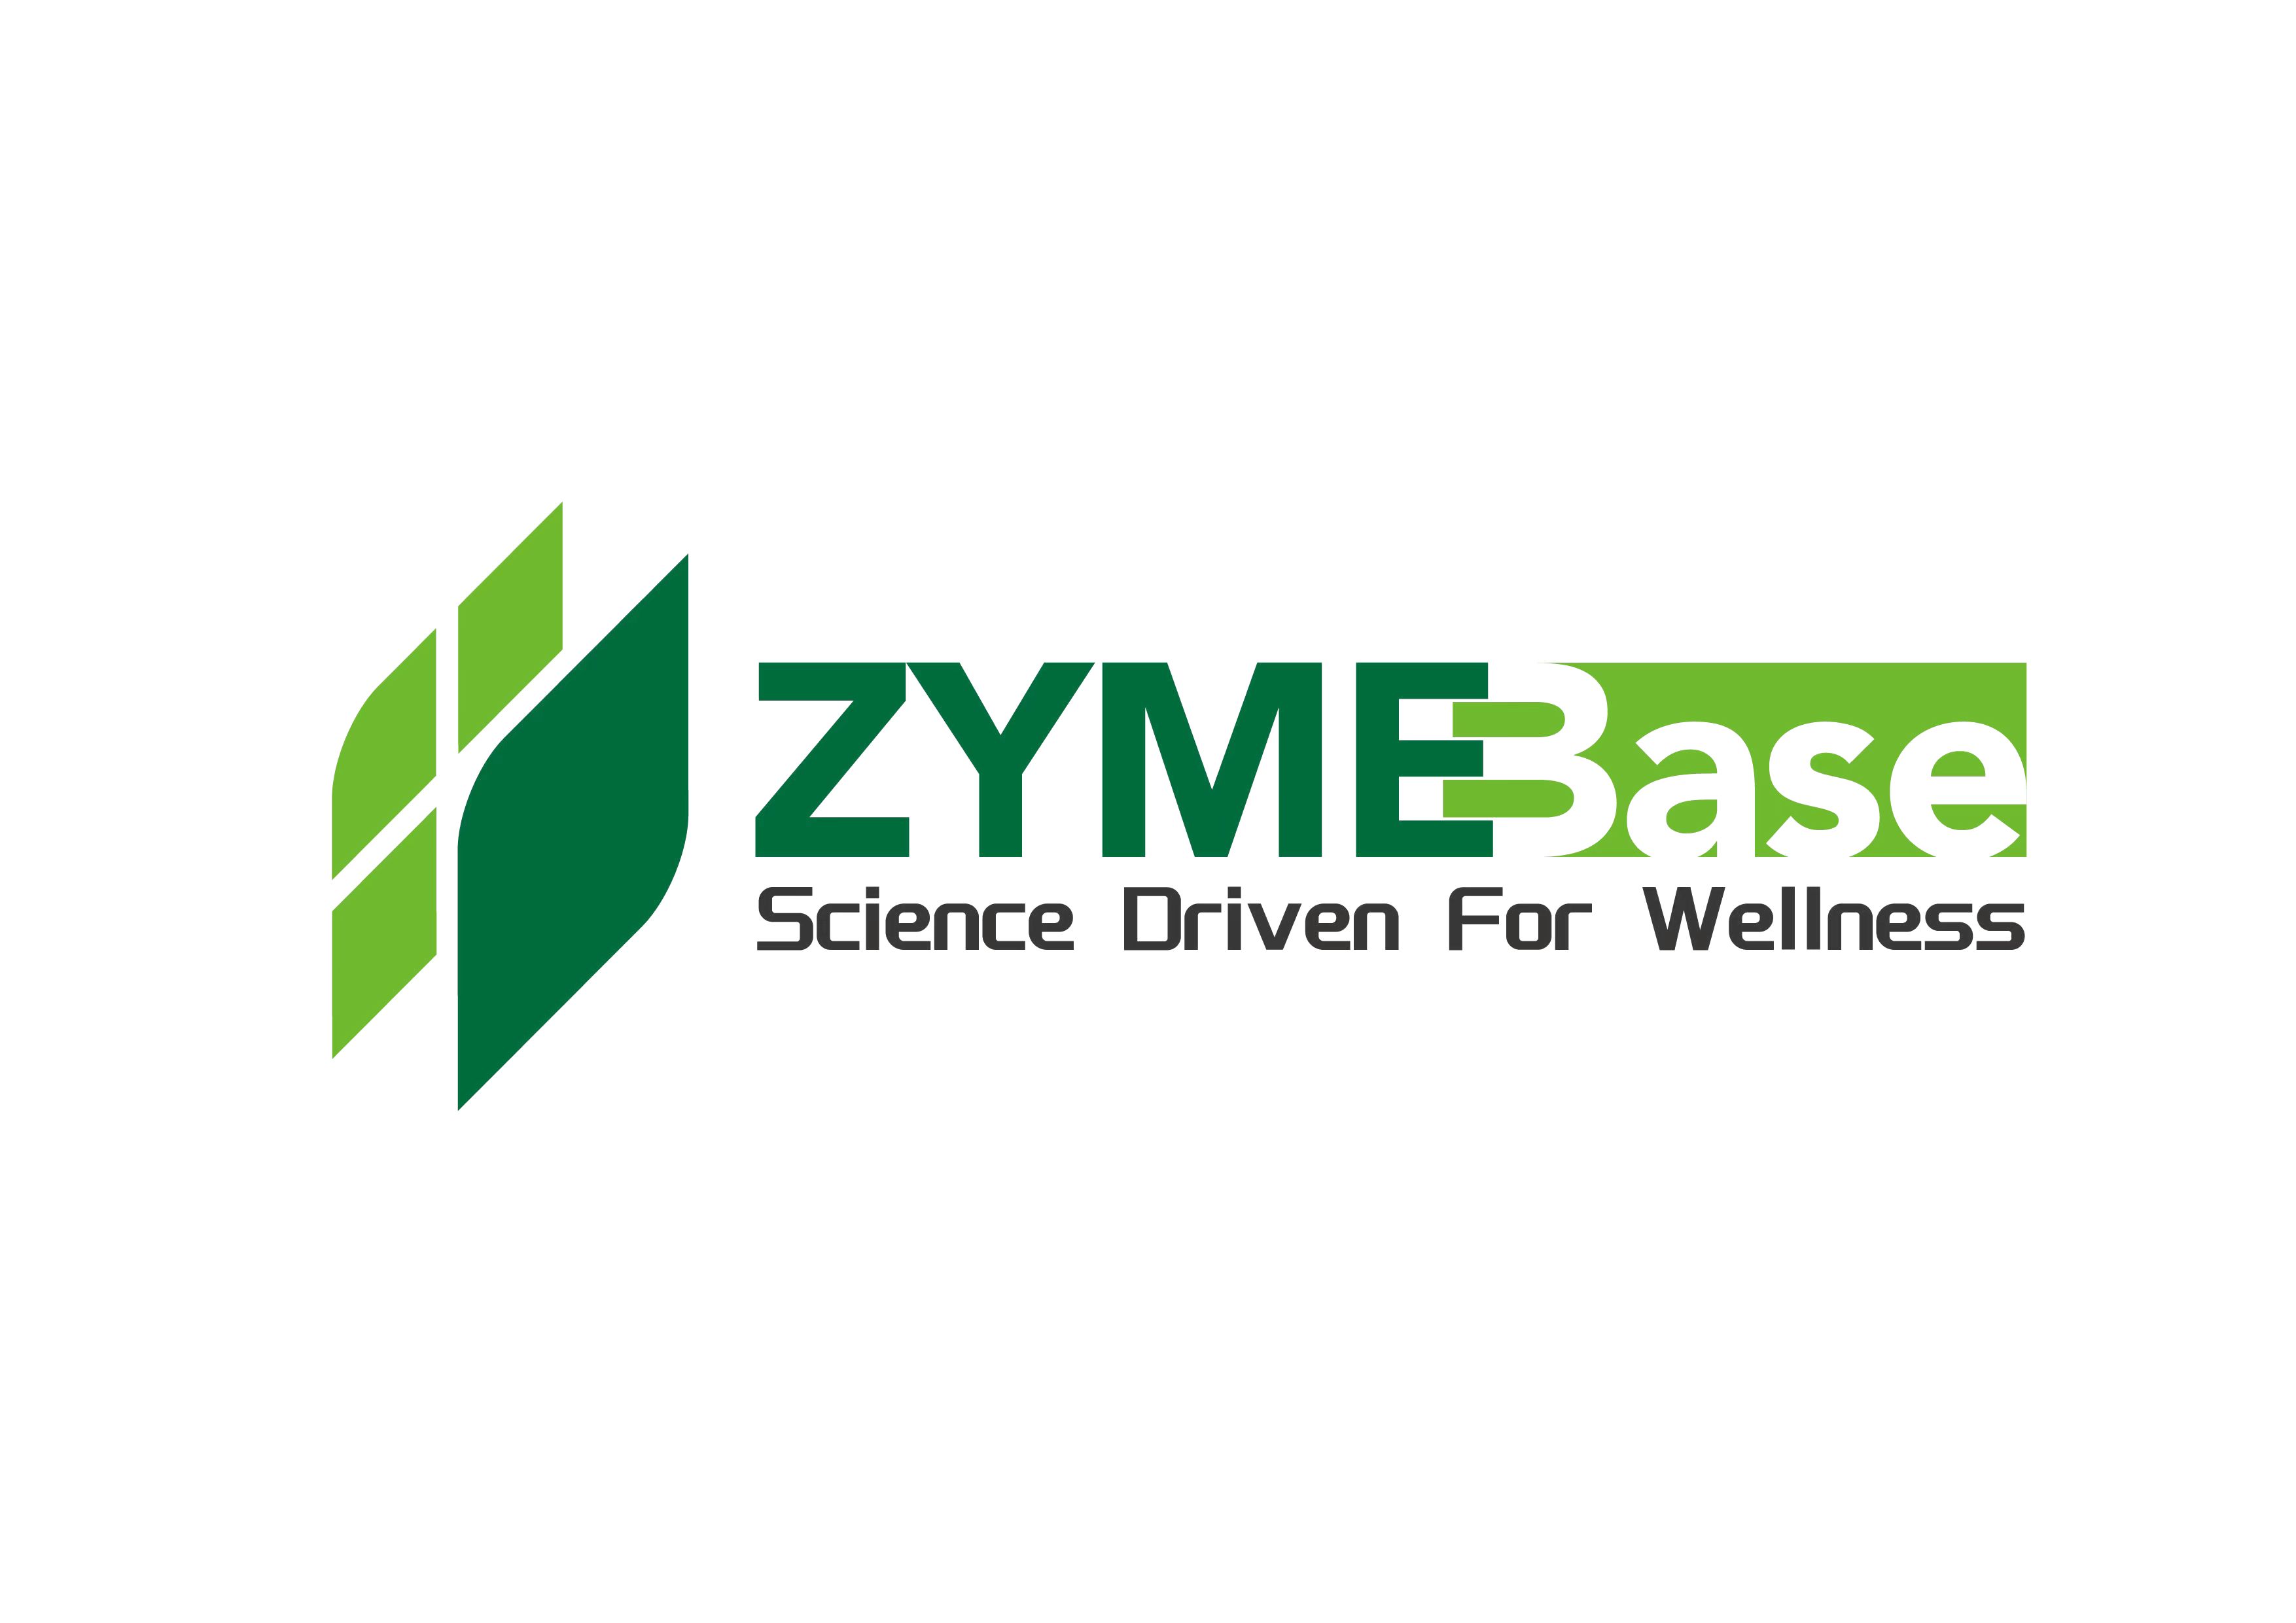 Zymebase Inc.